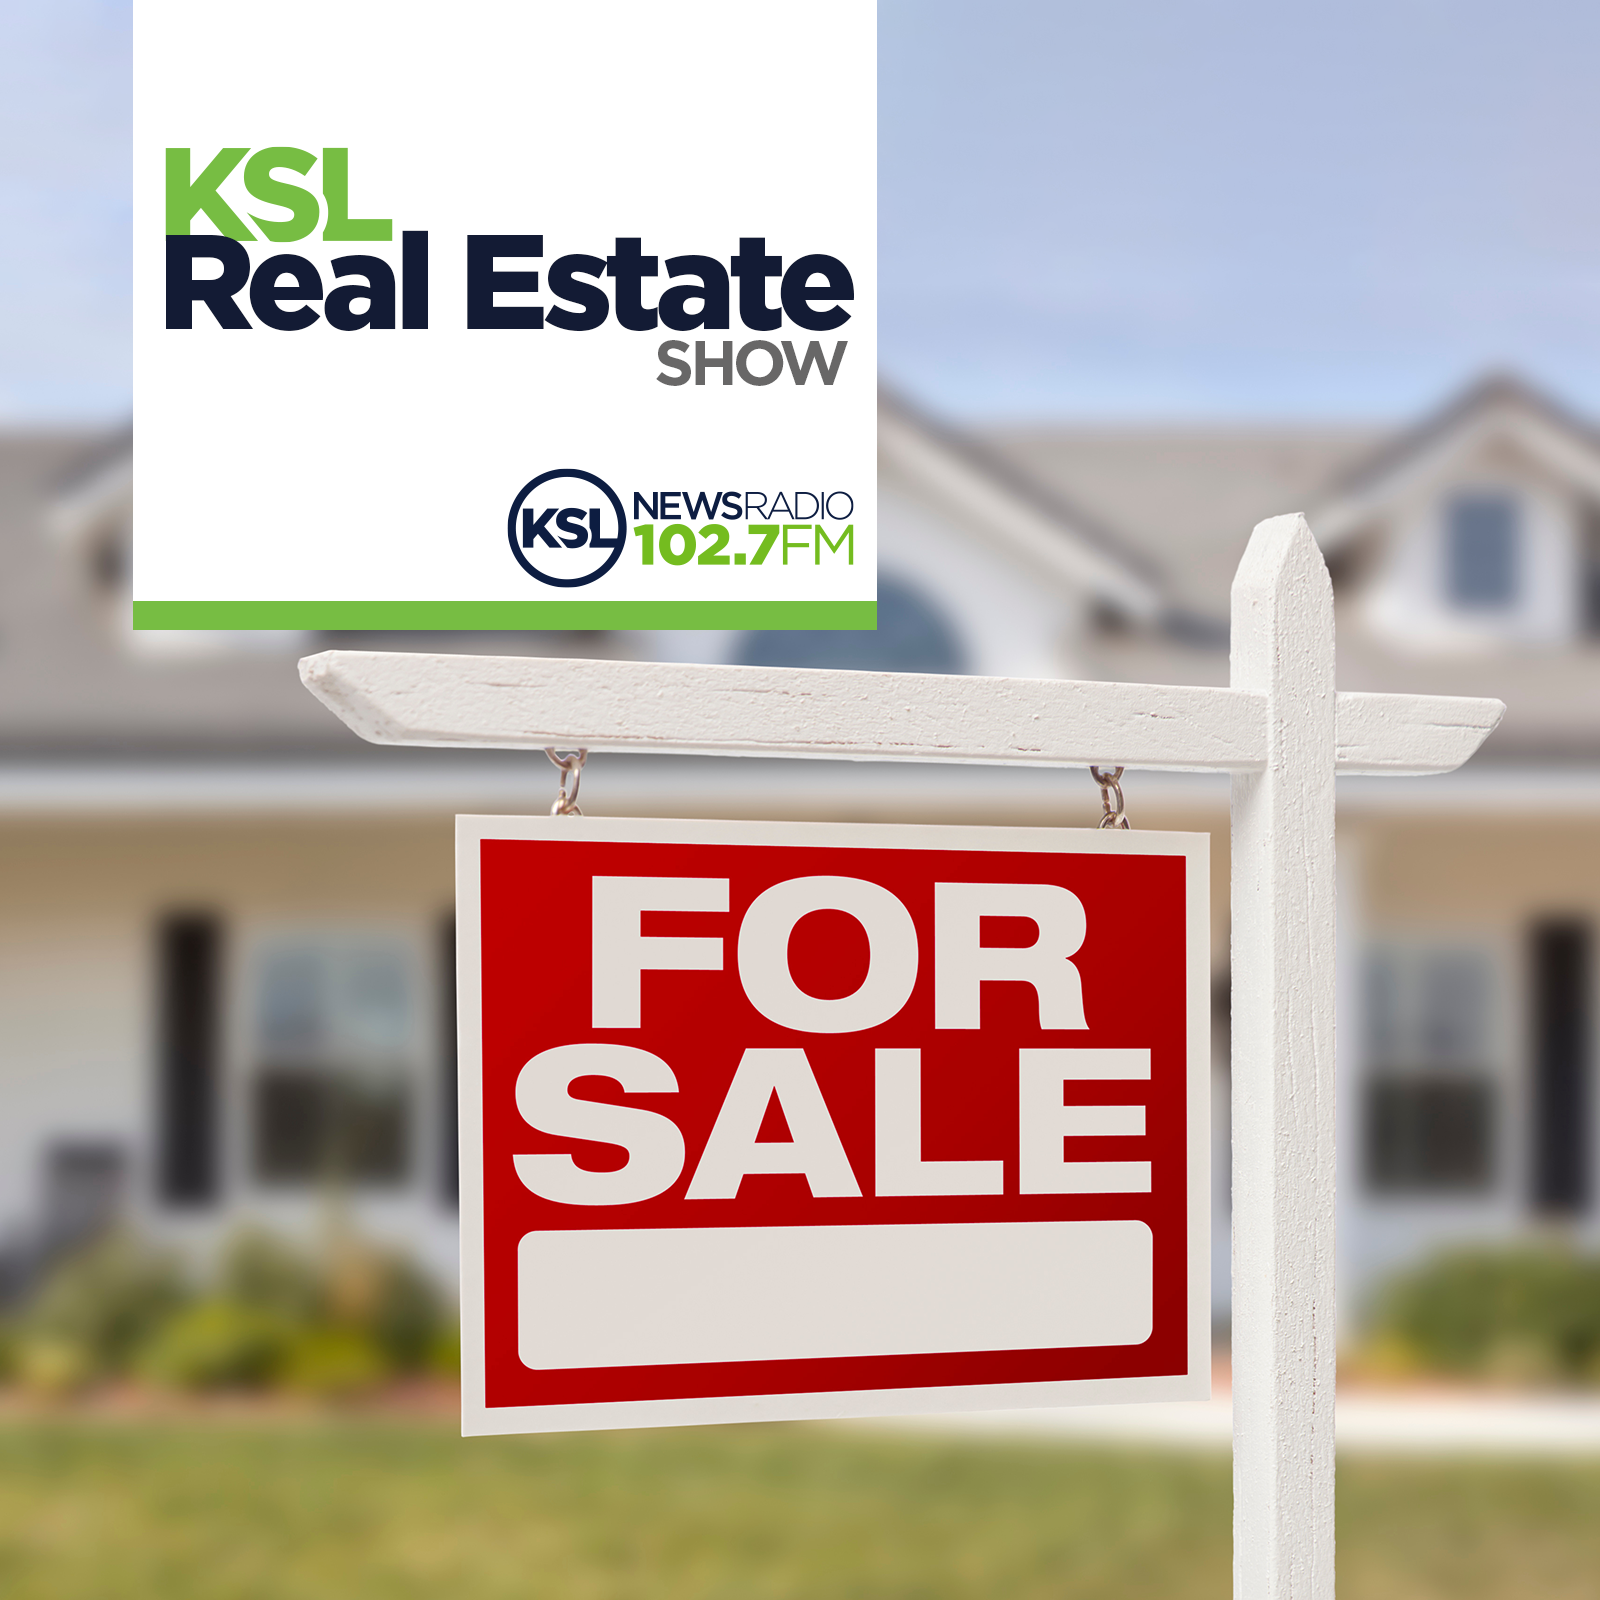 KSL Real Estate Show